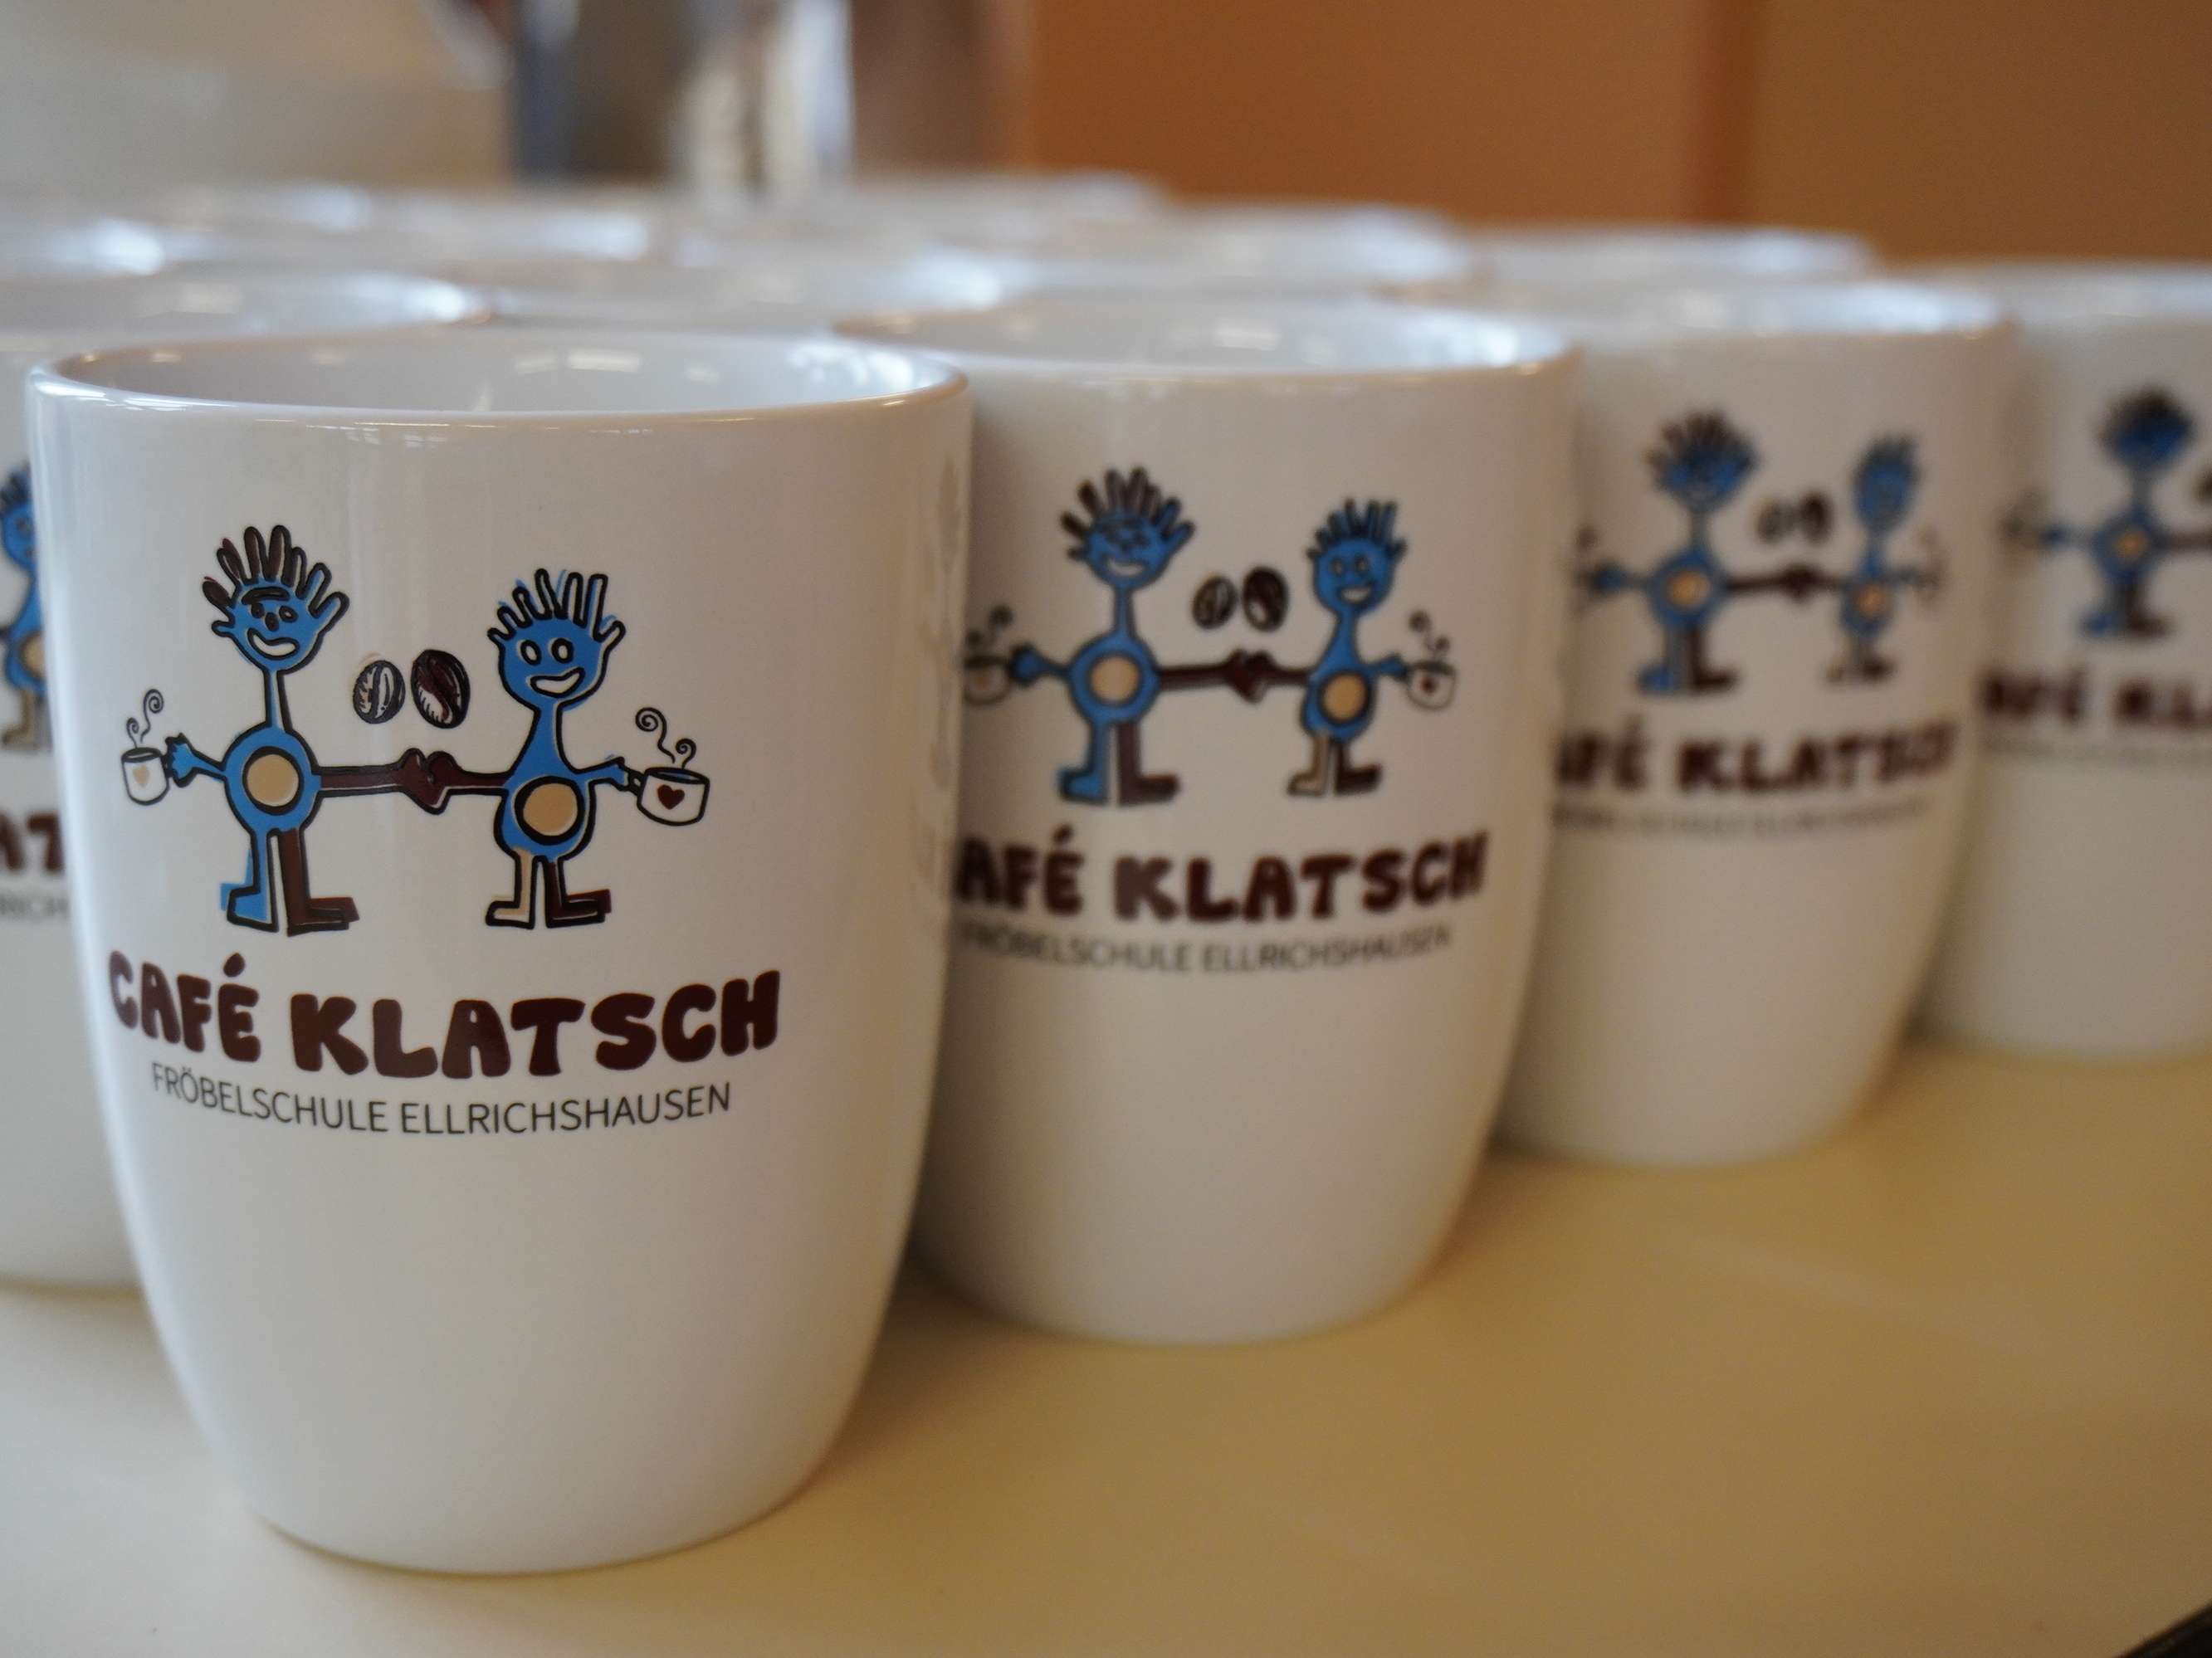  Tassen Café Klatsch - Bild wird beim Klicken vergrößert 